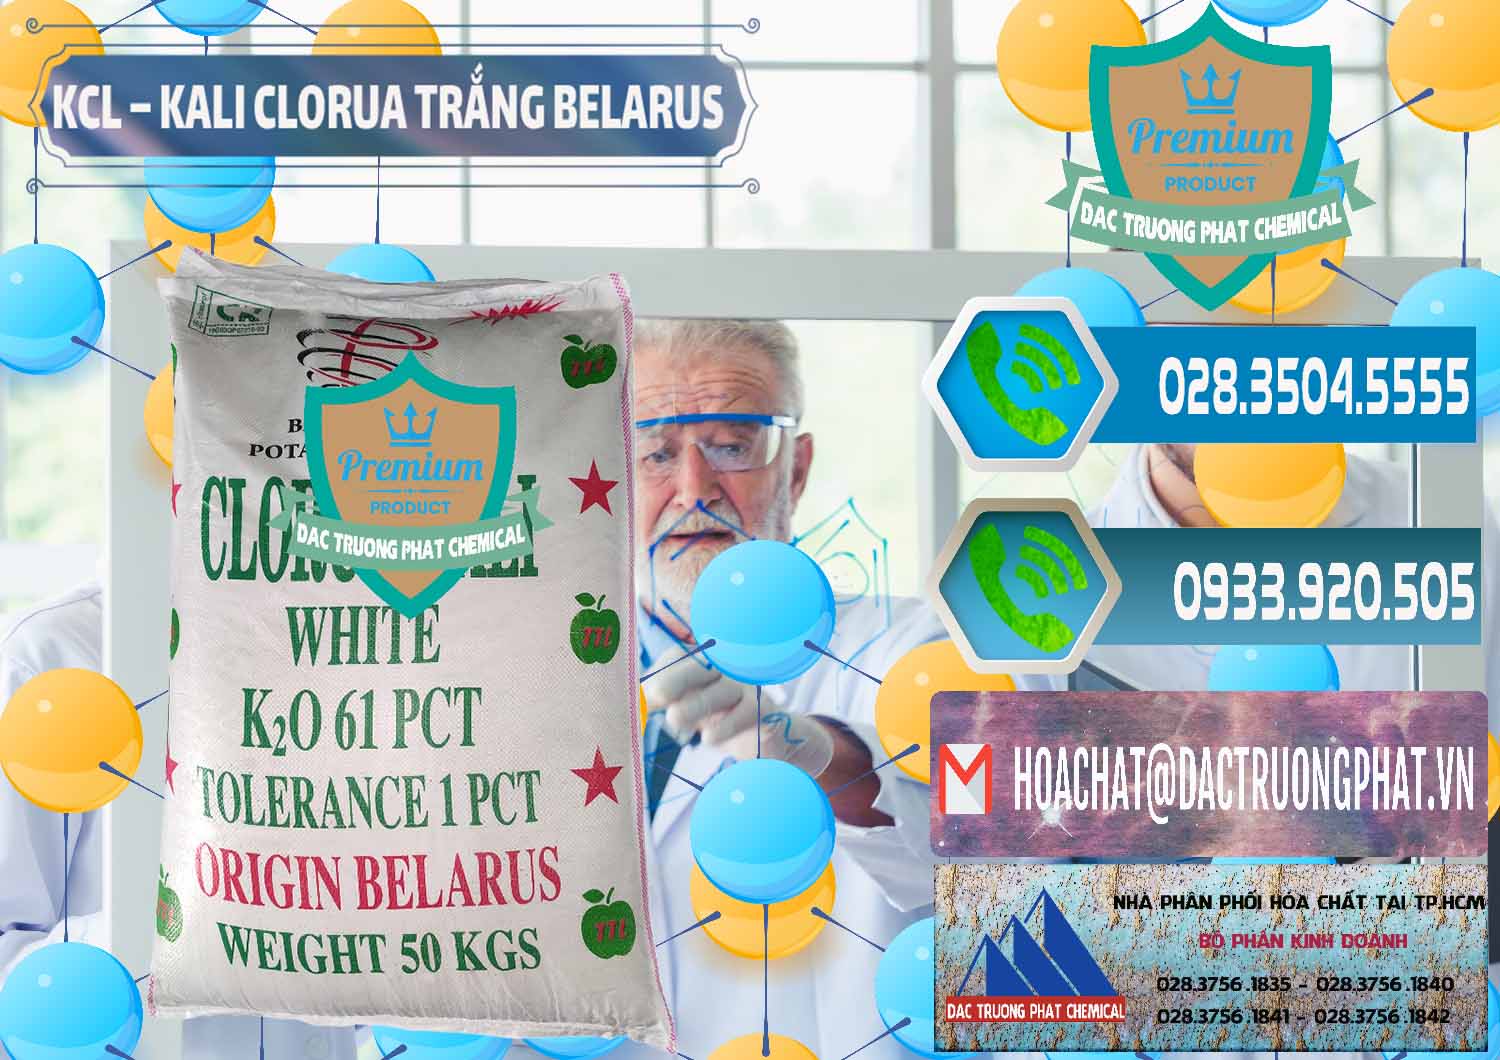 Nơi kinh doanh và bán KCL – Kali Clorua Trắng Belarus - 0085 - Cty kinh doanh ( cung cấp ) hóa chất tại TP.HCM - congtyhoachat.net